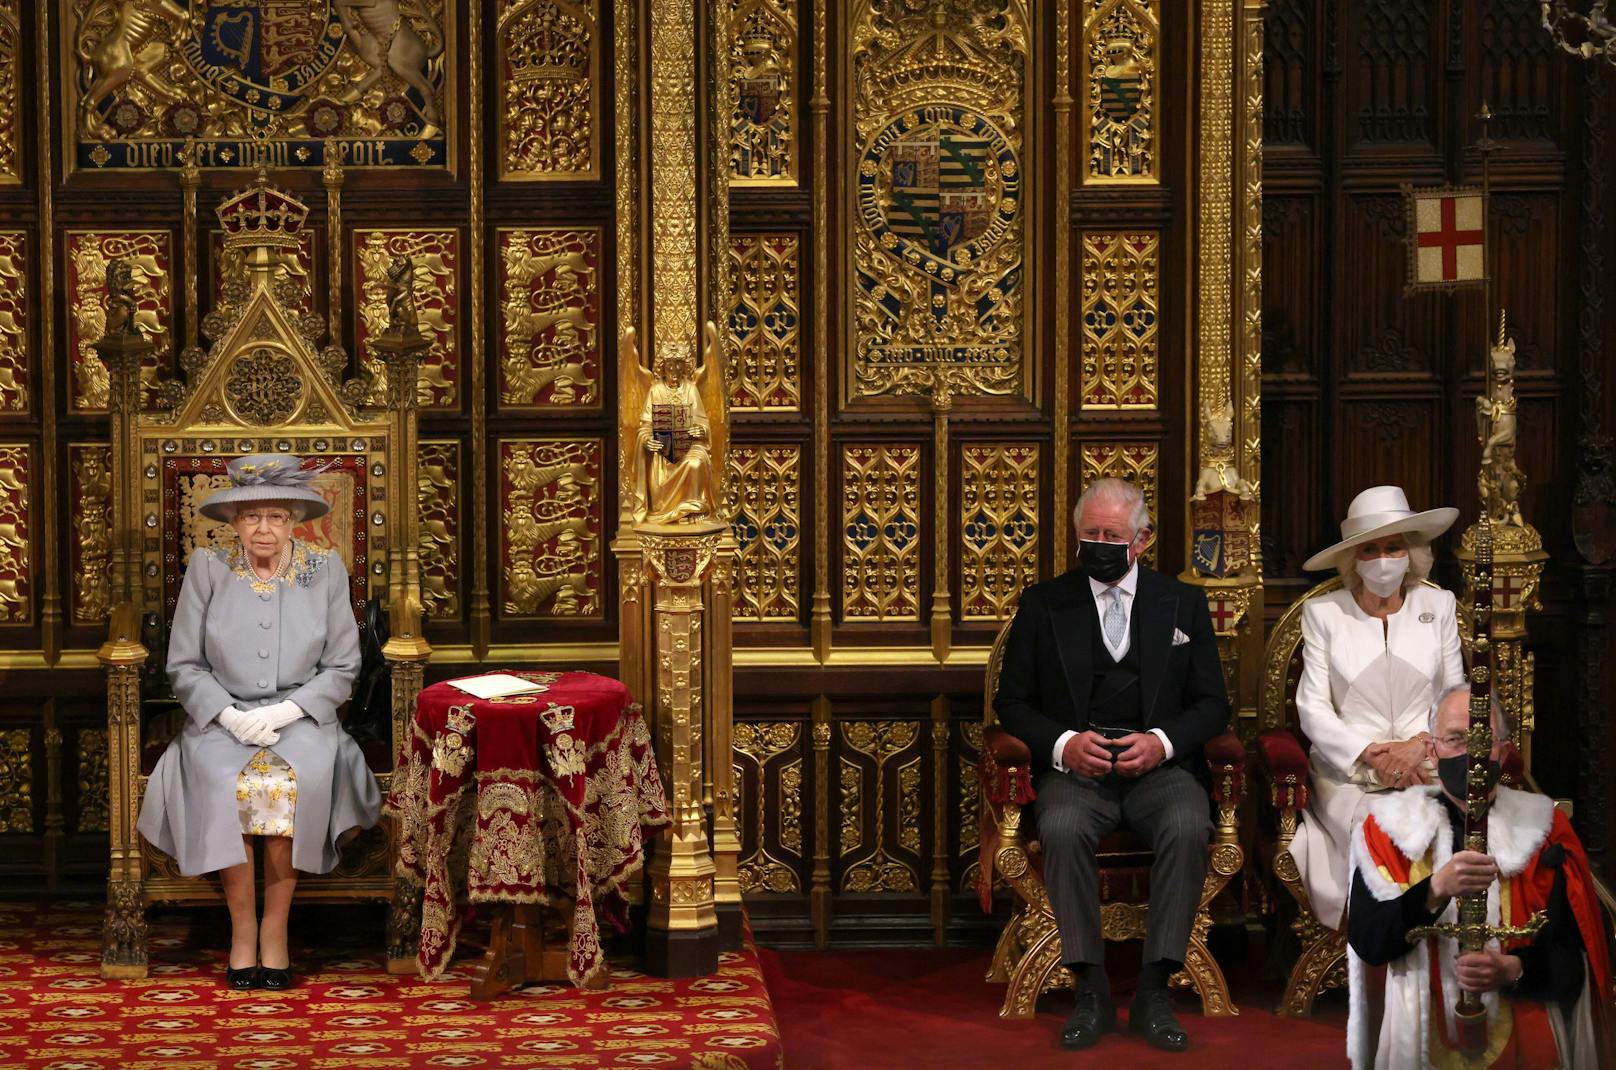 Erstmals seit ihrer Regentschaft fehlte der Consort’s Throne, der immer neben dem Sovereign’s Throne – dem Stuhl der Queen - stand. Darauf nahm stets Prinz Philip Platz, wenn er seine Frau zur Eröffnung des britischen Parlaments begleitete.